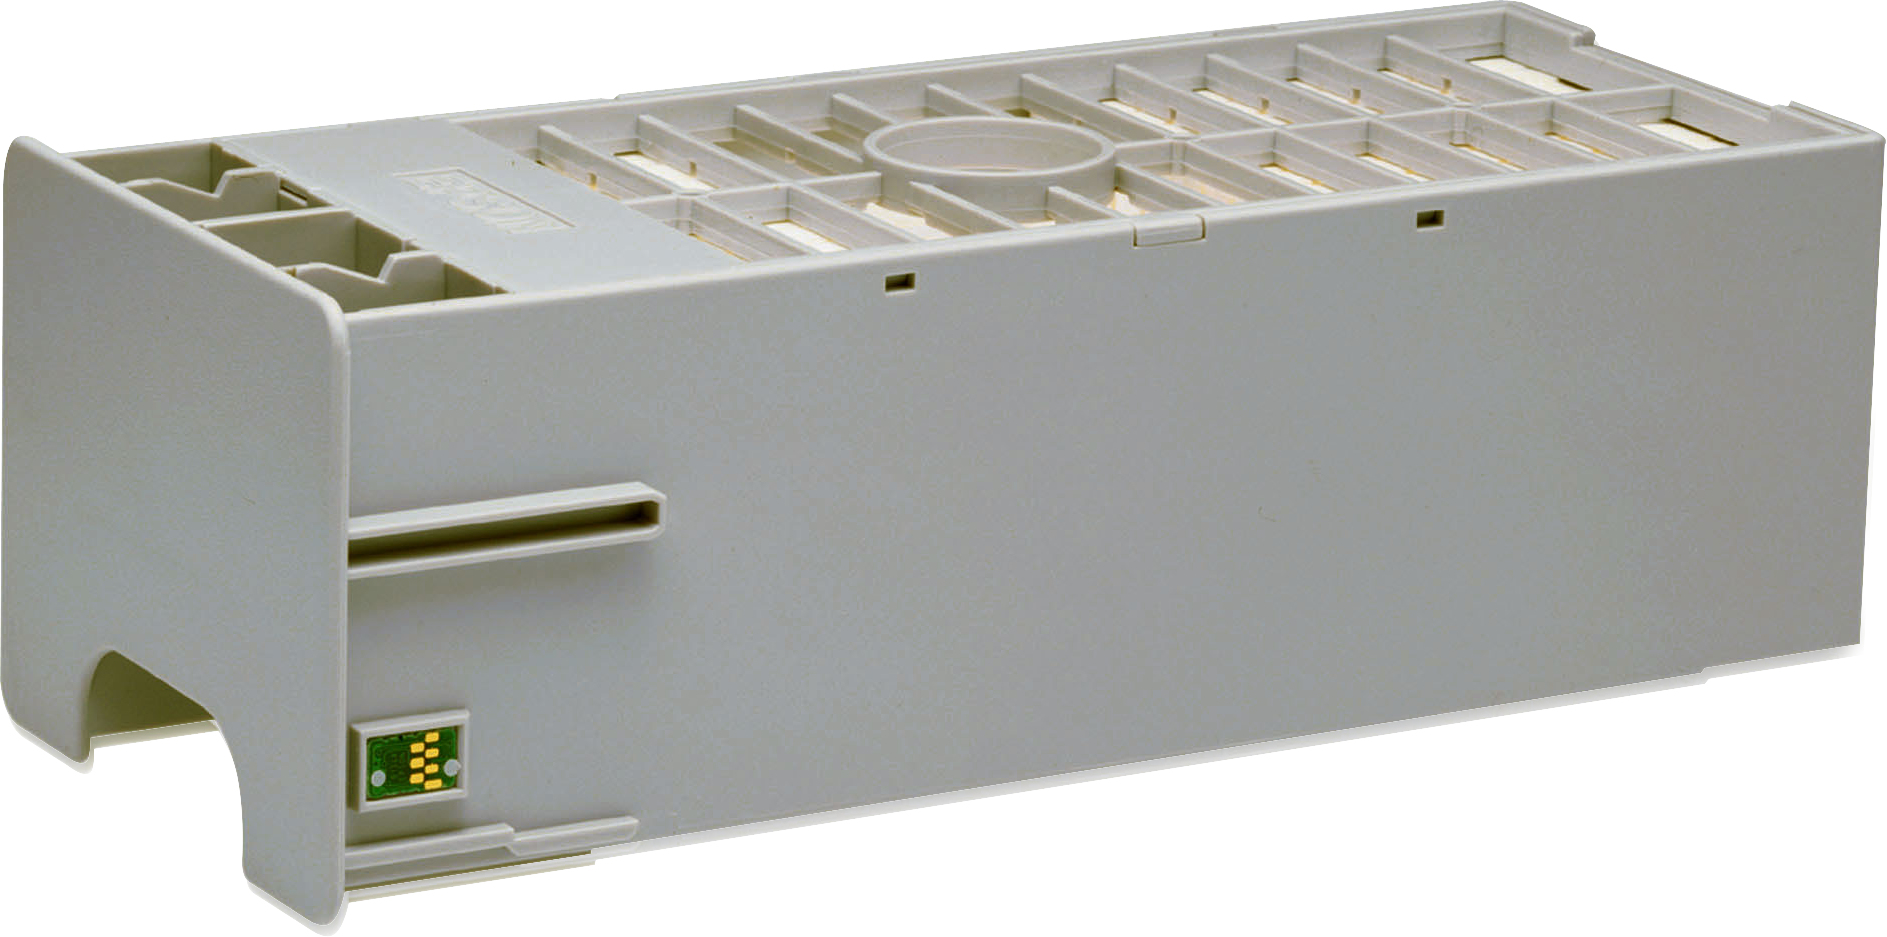 Epson Tinten-Wartungstank - für Stylus Pro 11880, Pro 7900